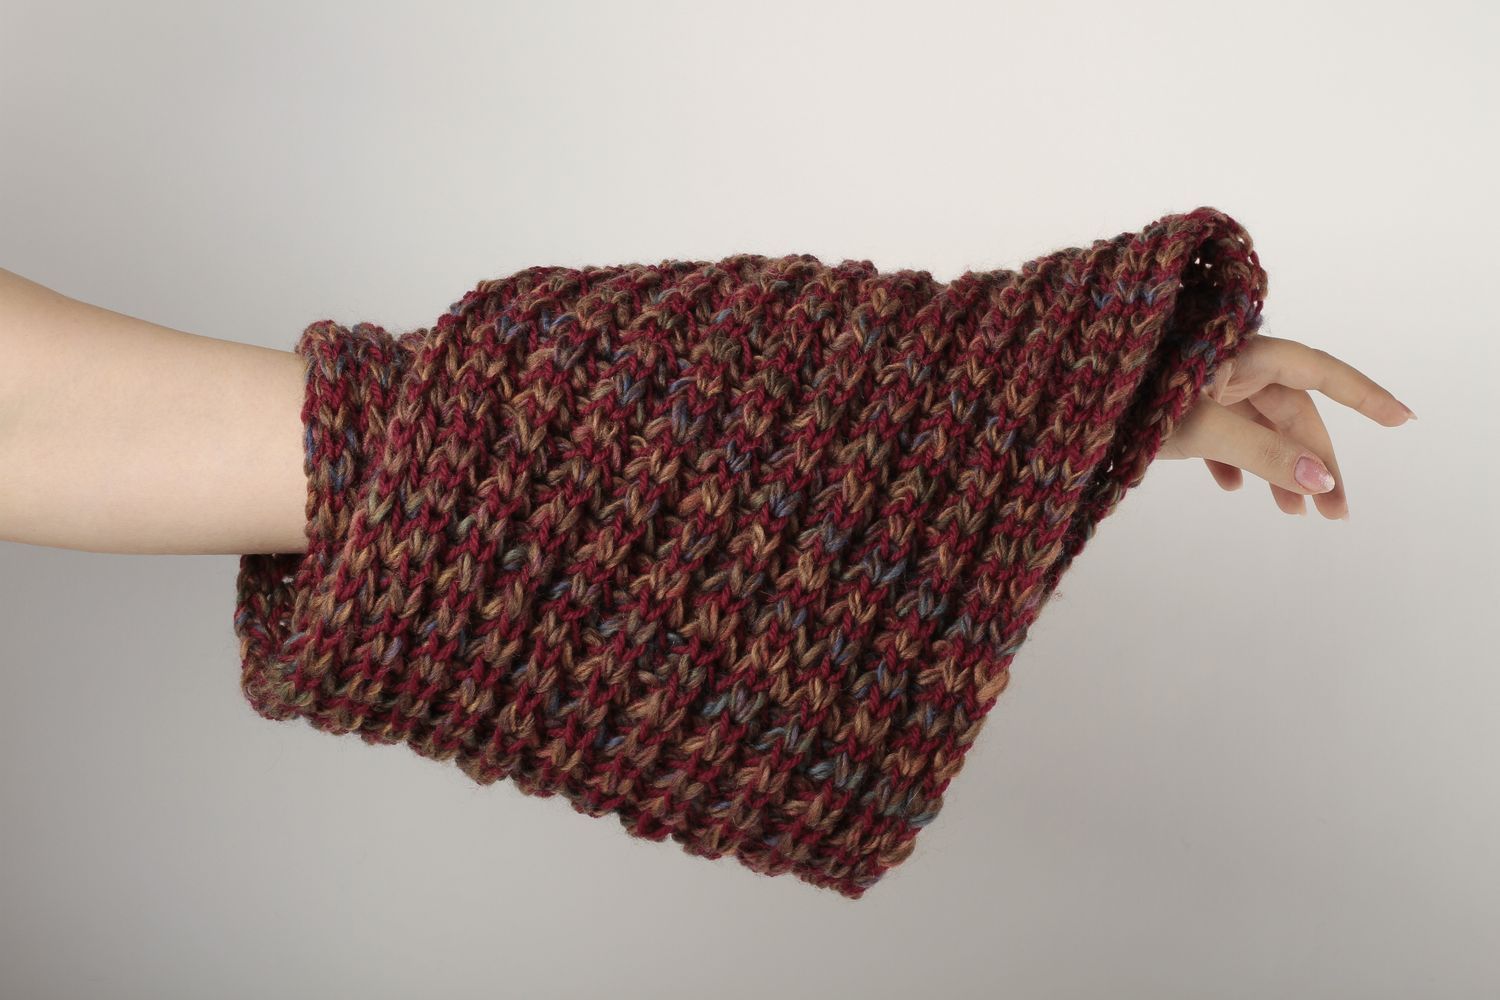 Écharpe au tricot faite main Vêtement femme homme marron-rouge laine Idée cadeau photo 1